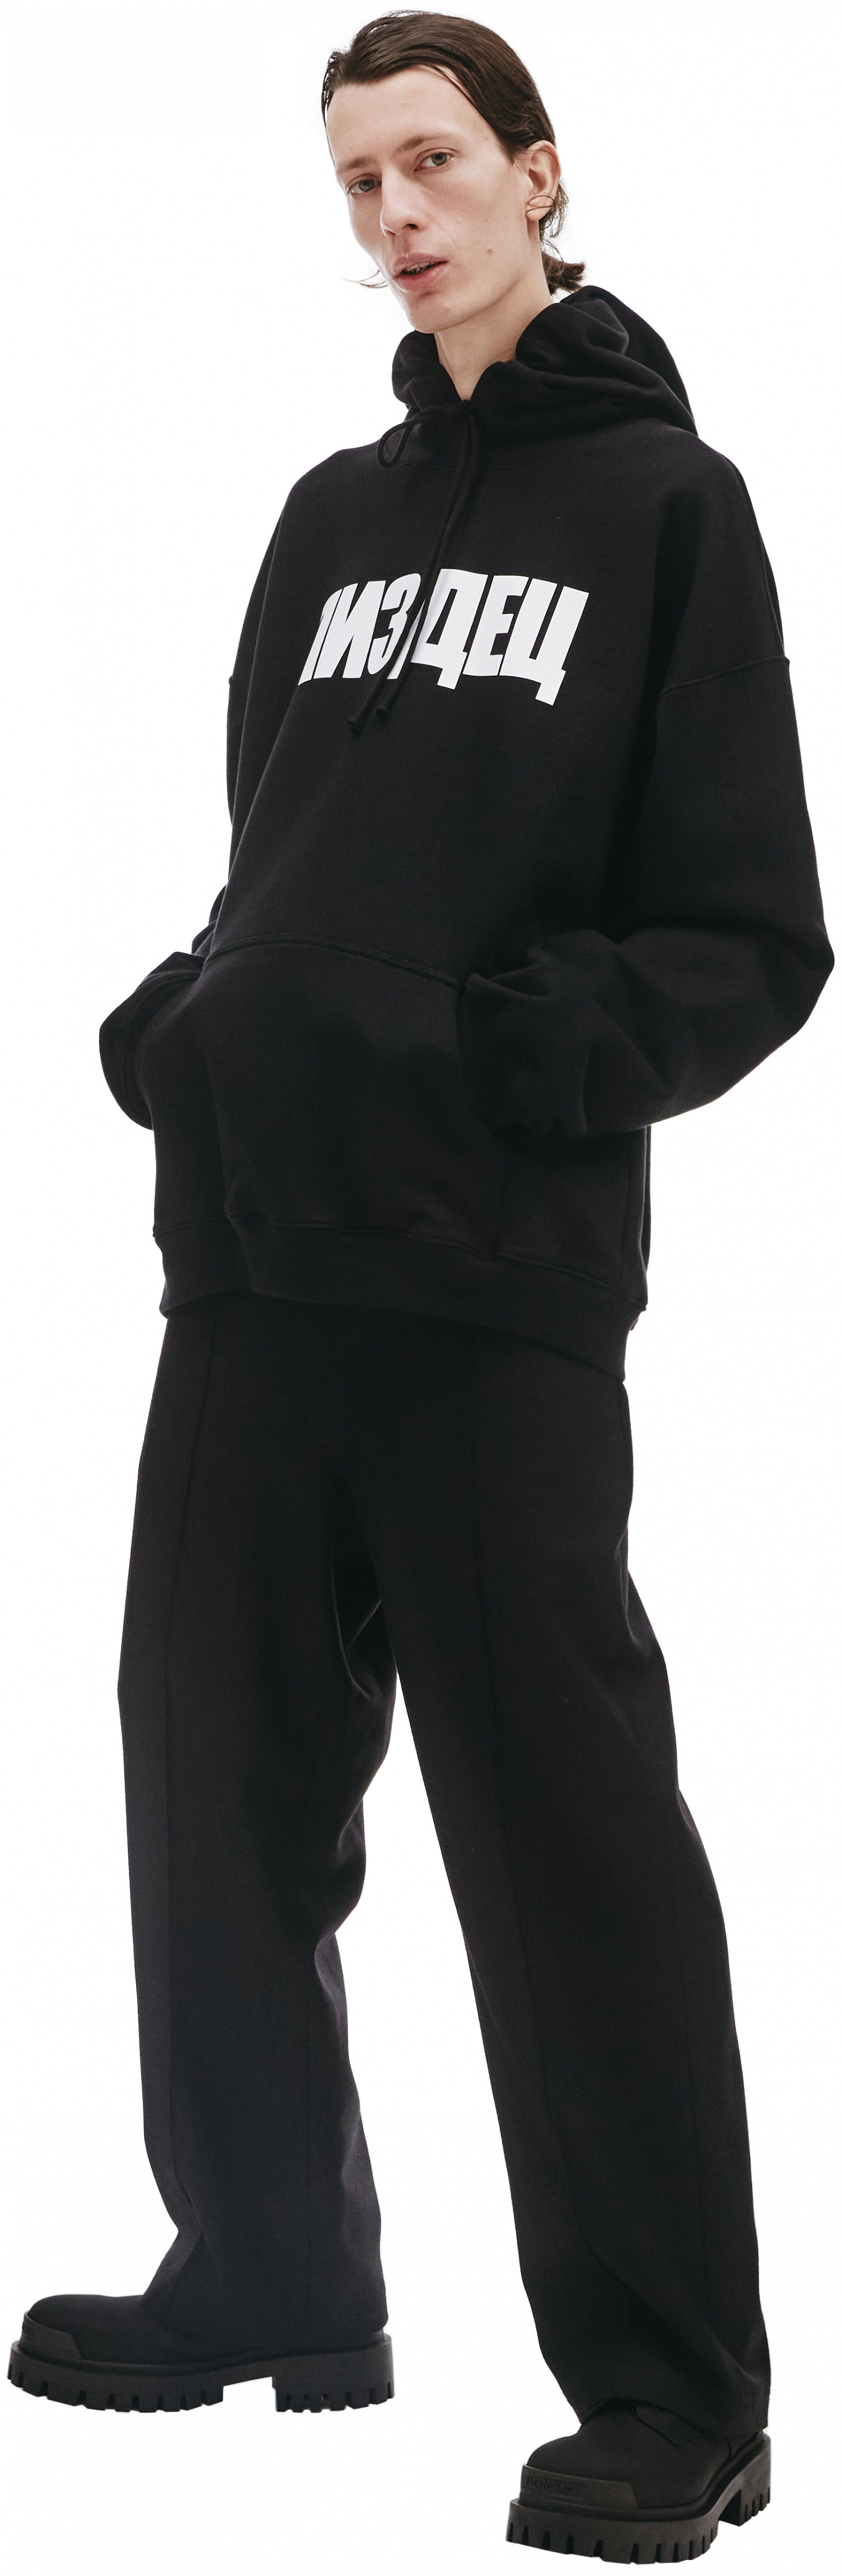 Buy VETEMENTS men black vetements x sv hoodie for $965 online on